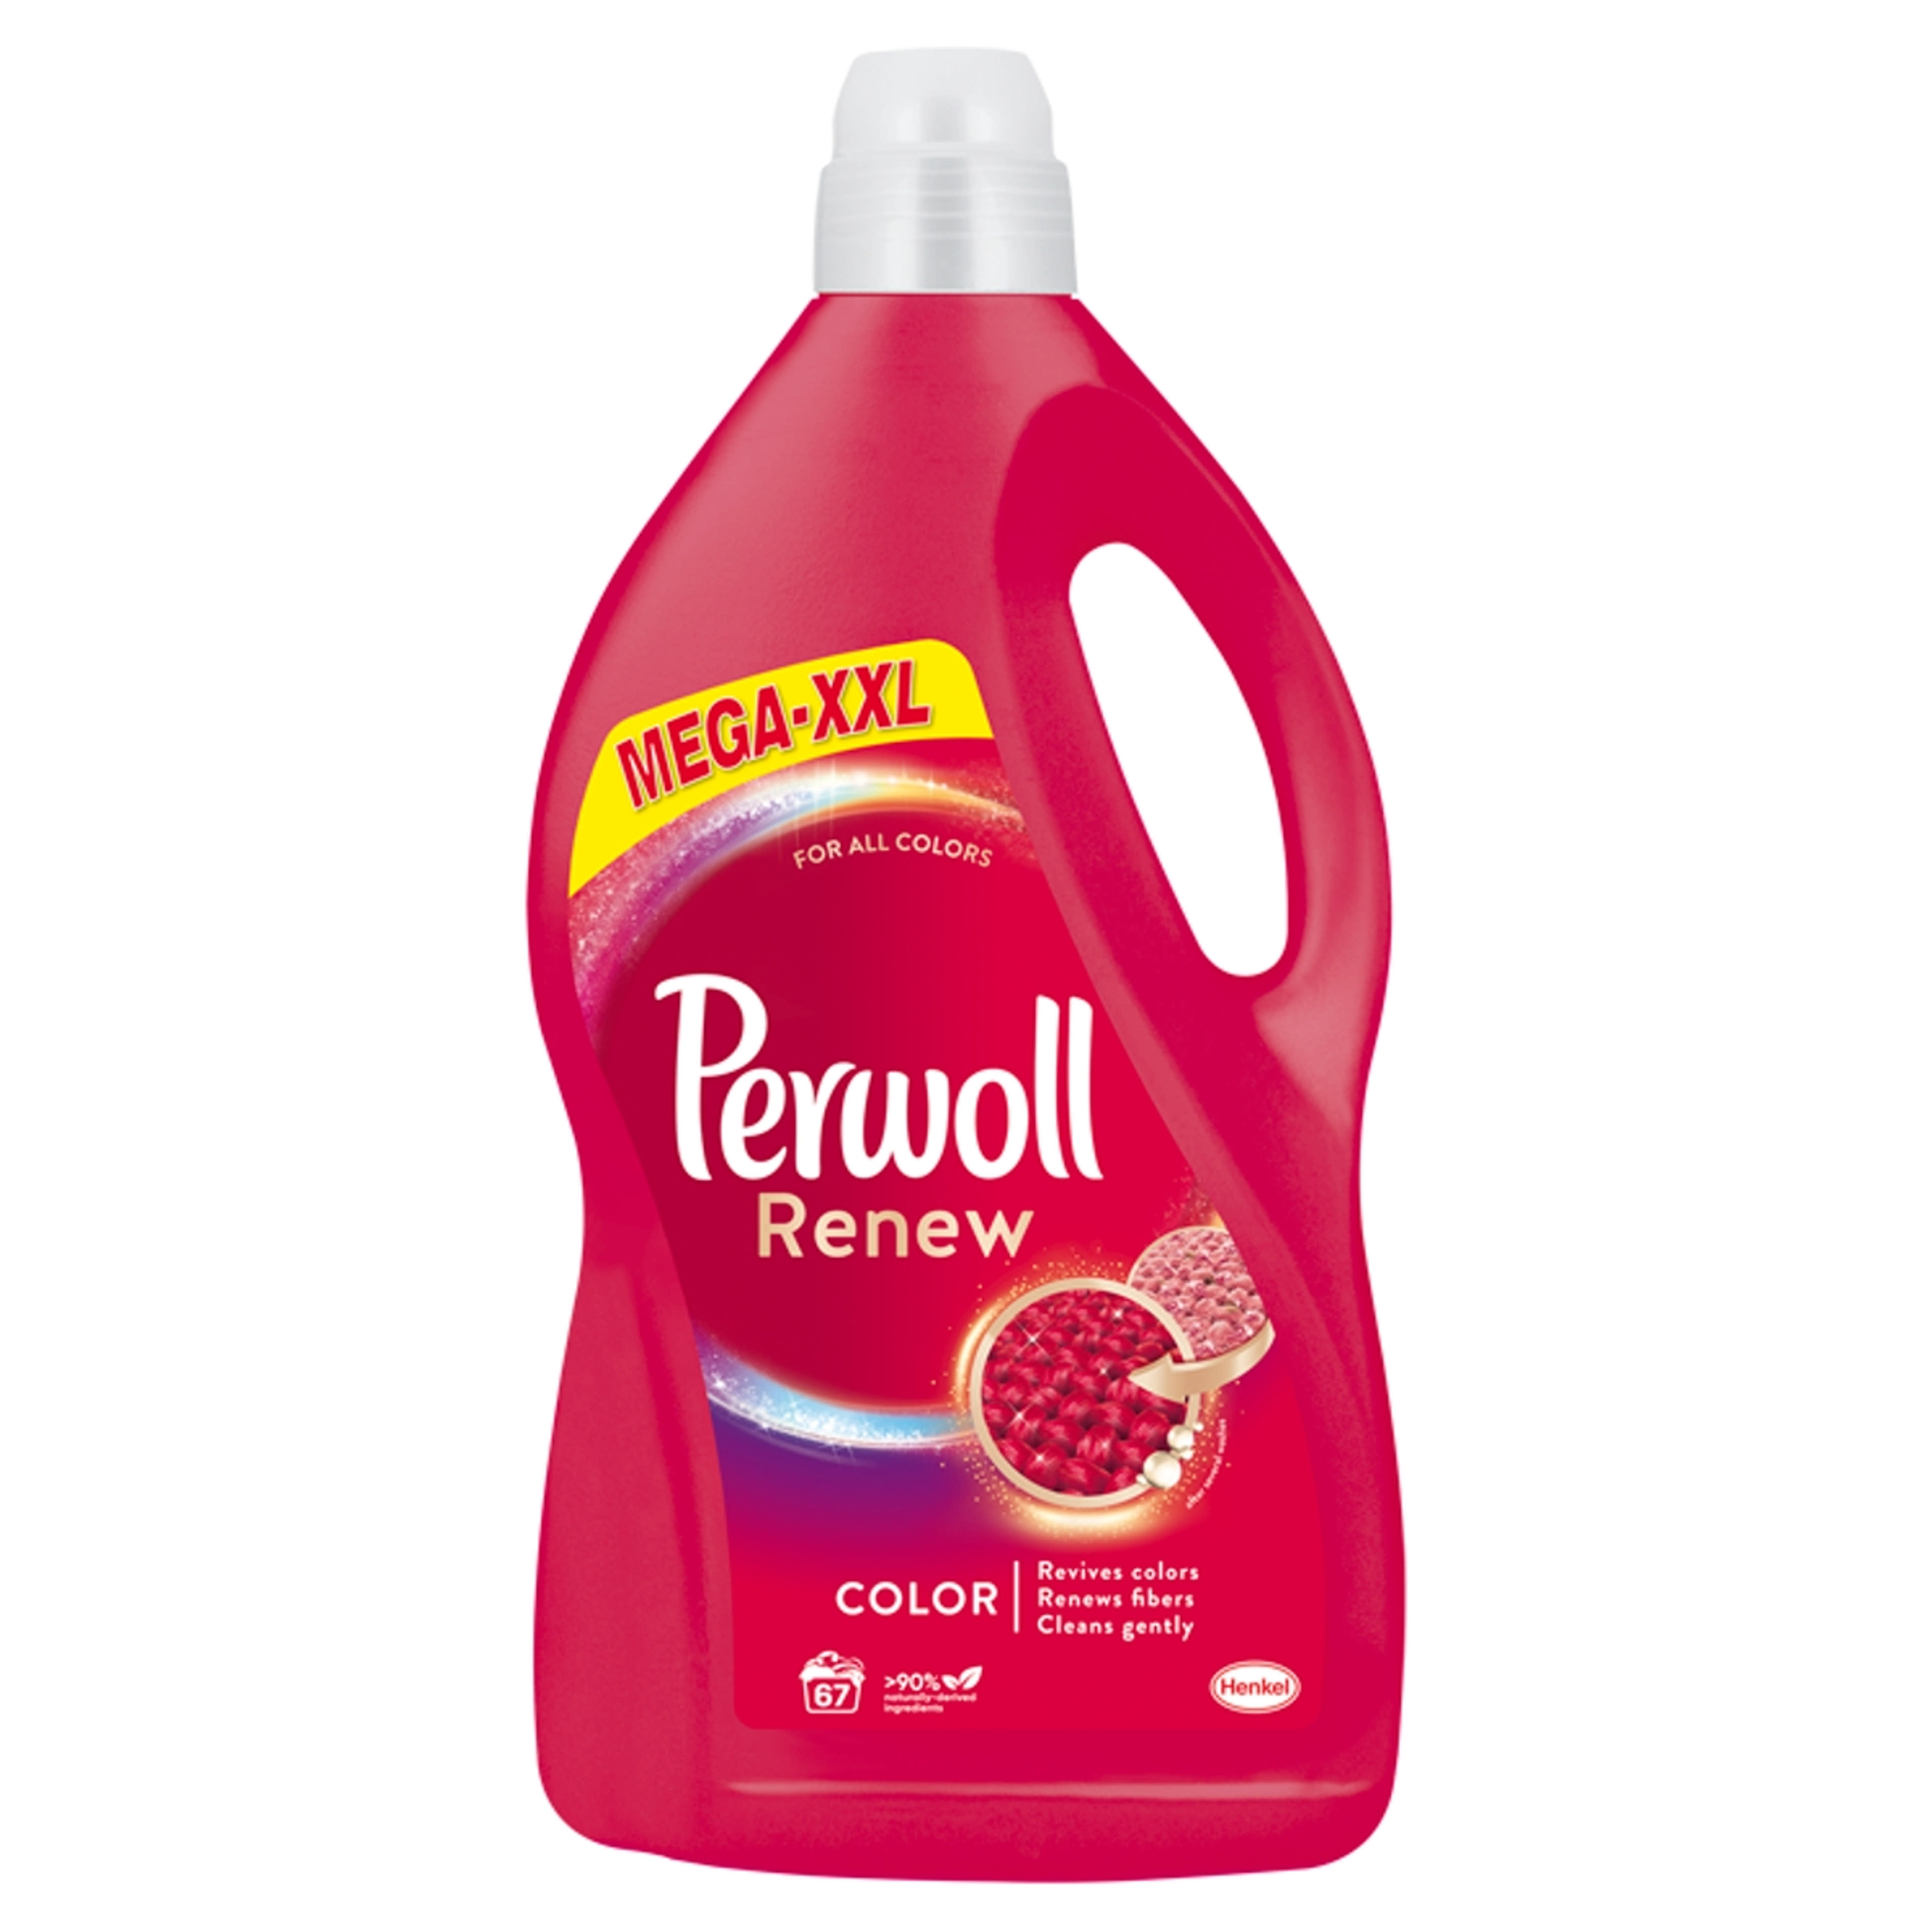 Perwoll Renew 3D Color kímélő mosószer, 67 mosás - 4050 ml